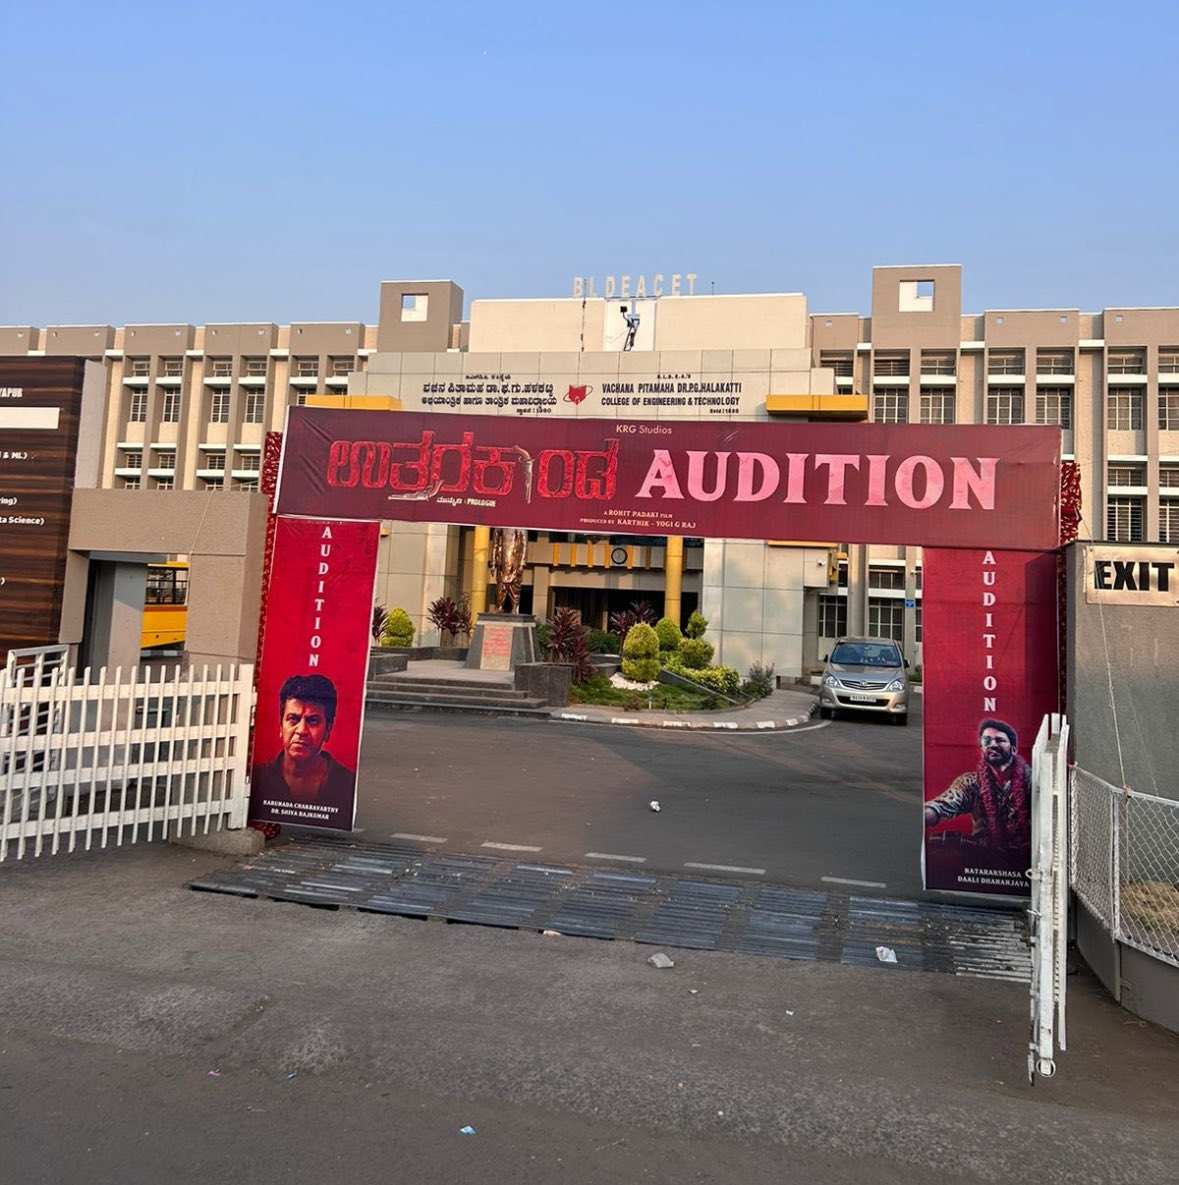 All set for today's #Uttarakaanda audition at ವಿಜಯಪುರ 🤩 #UKAuditionsChaalu @KRG_Studios @NimmaShivanna @Dhananjayaka @RohitPadaki @Karthik1423 @AdvaithaAmbara @rajakrishnan_mr @Ani_Anirudh1 @aanandaaudio @Uttarakaanda ⁦@KRG_Connects⁩